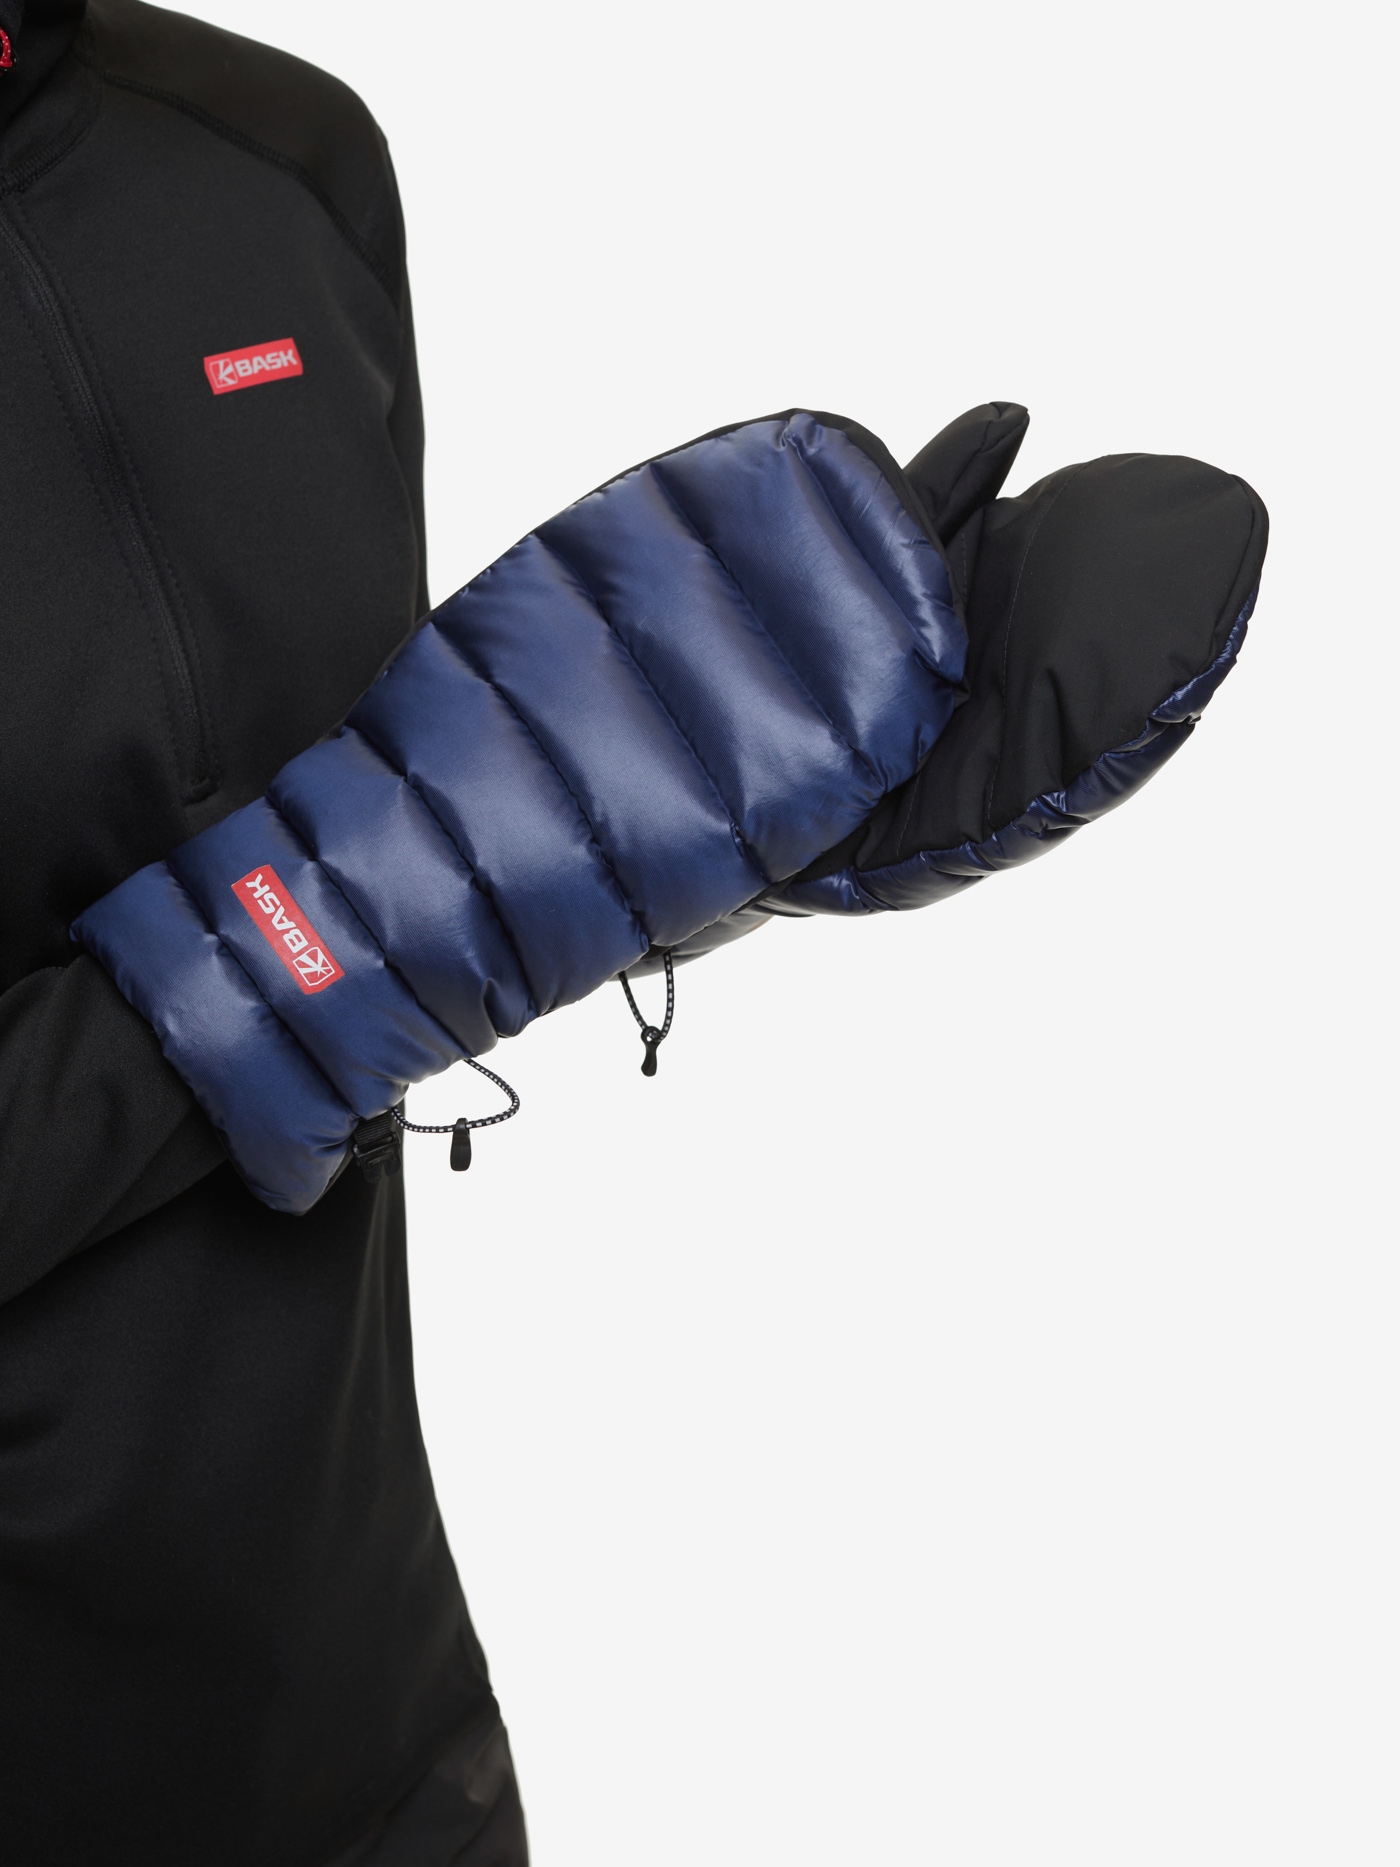 Пуховые рукавицы BASK, размер M, цвет колониальный синий 19H57-9378-M D-tube mitts - фото 11